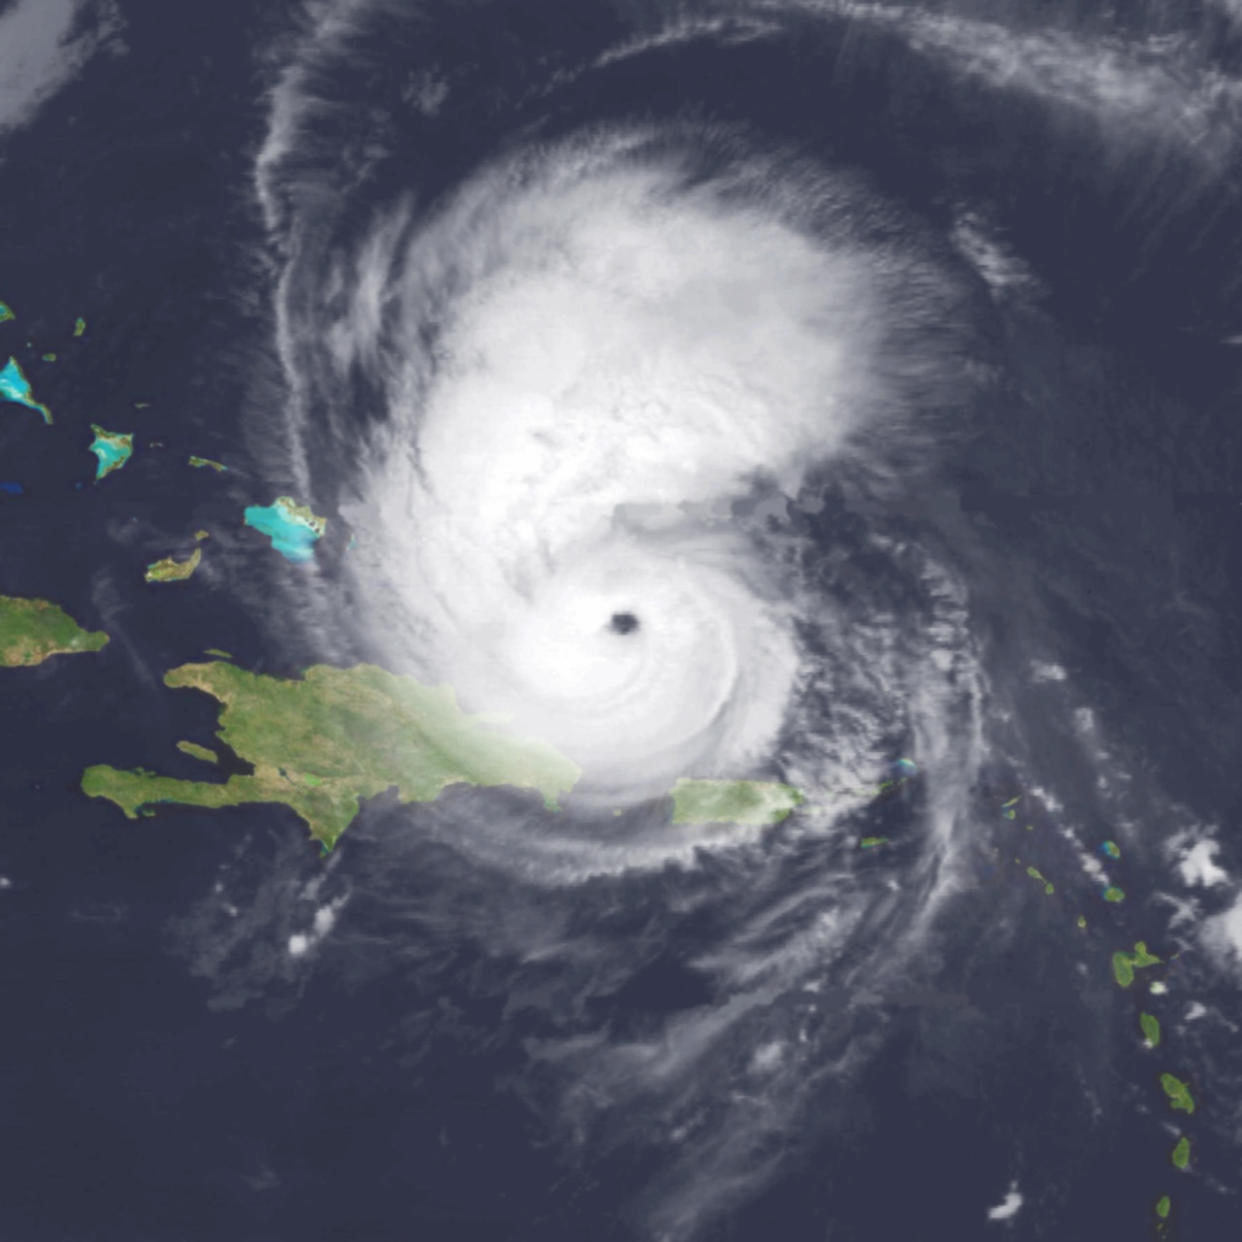 Category 3 Hurricane Bertha delayed sailing events at the 1996 Atlanta Games